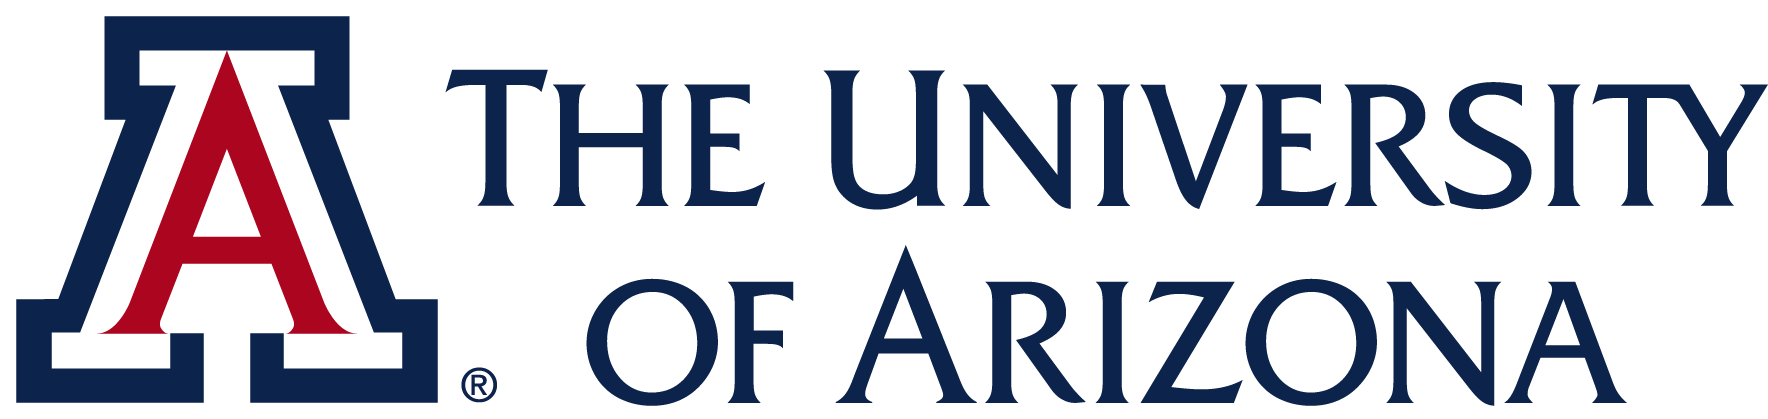 UArizona logo